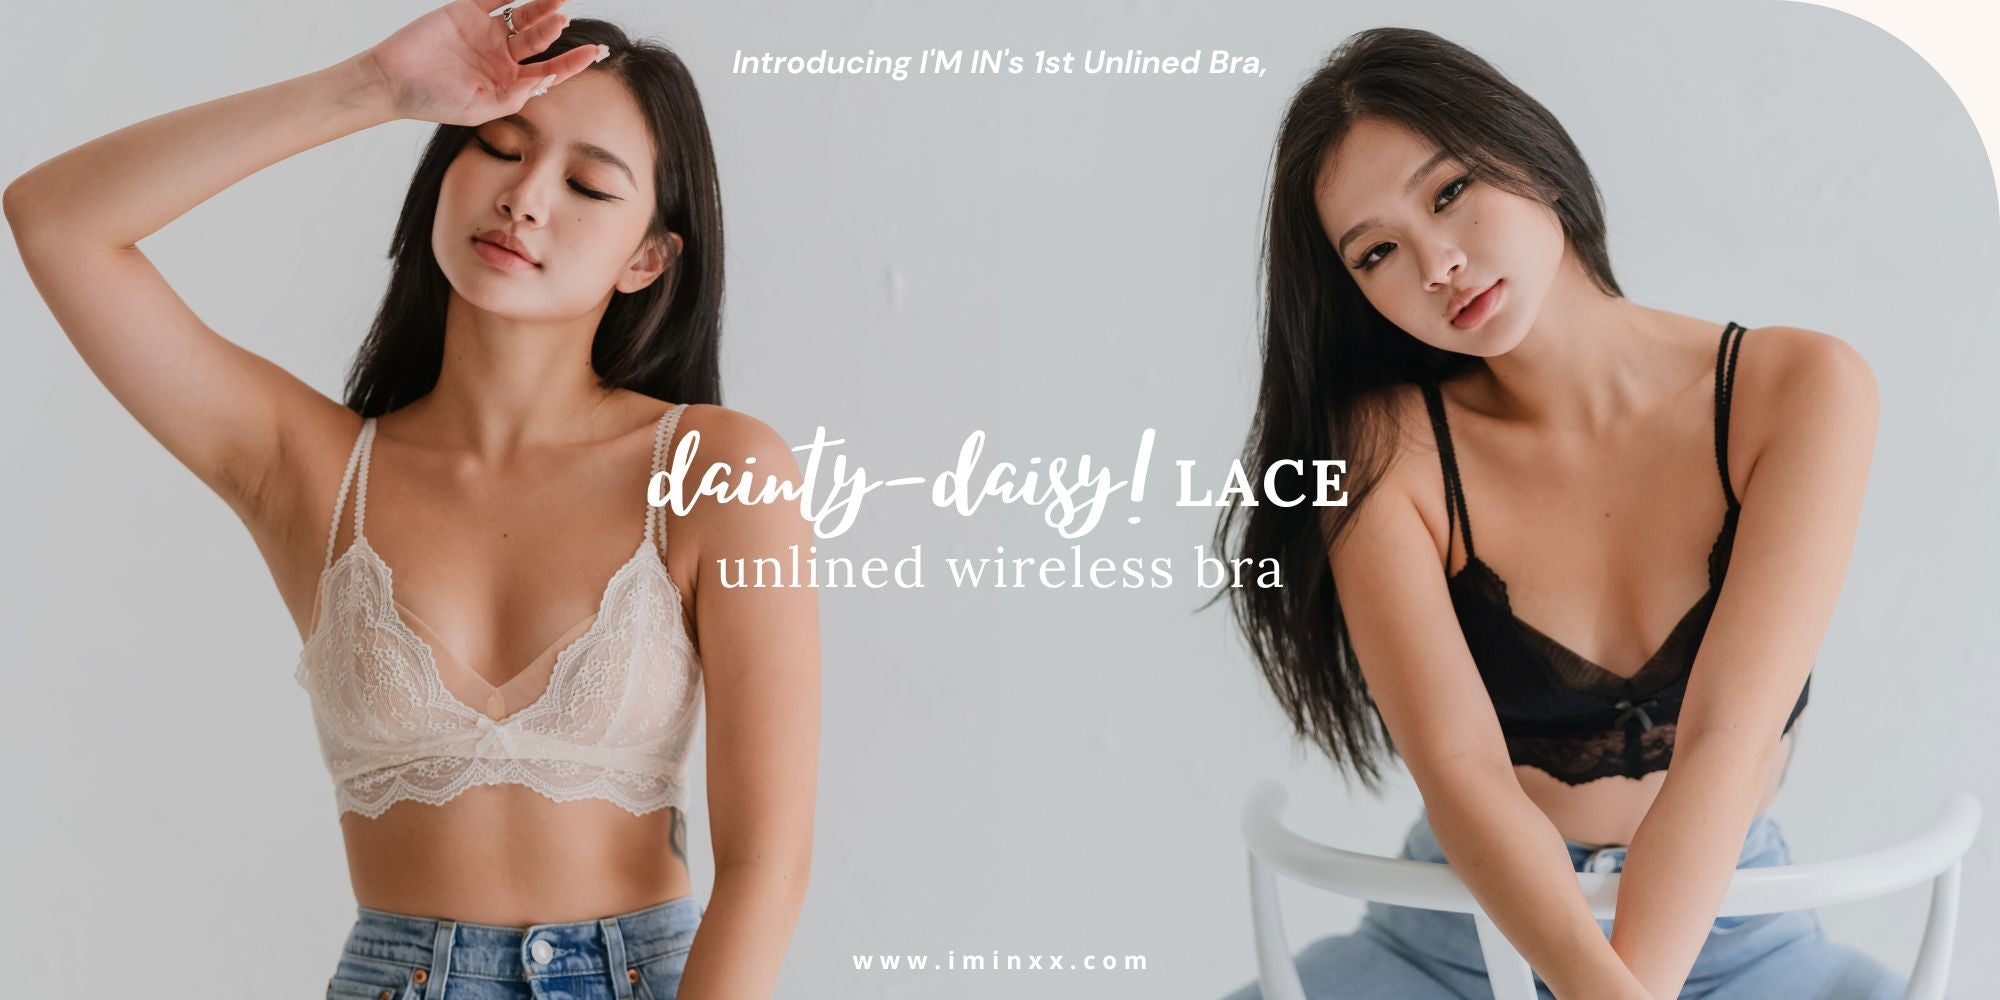 Dainty Daisy! Lace Unlined Wireless Bra